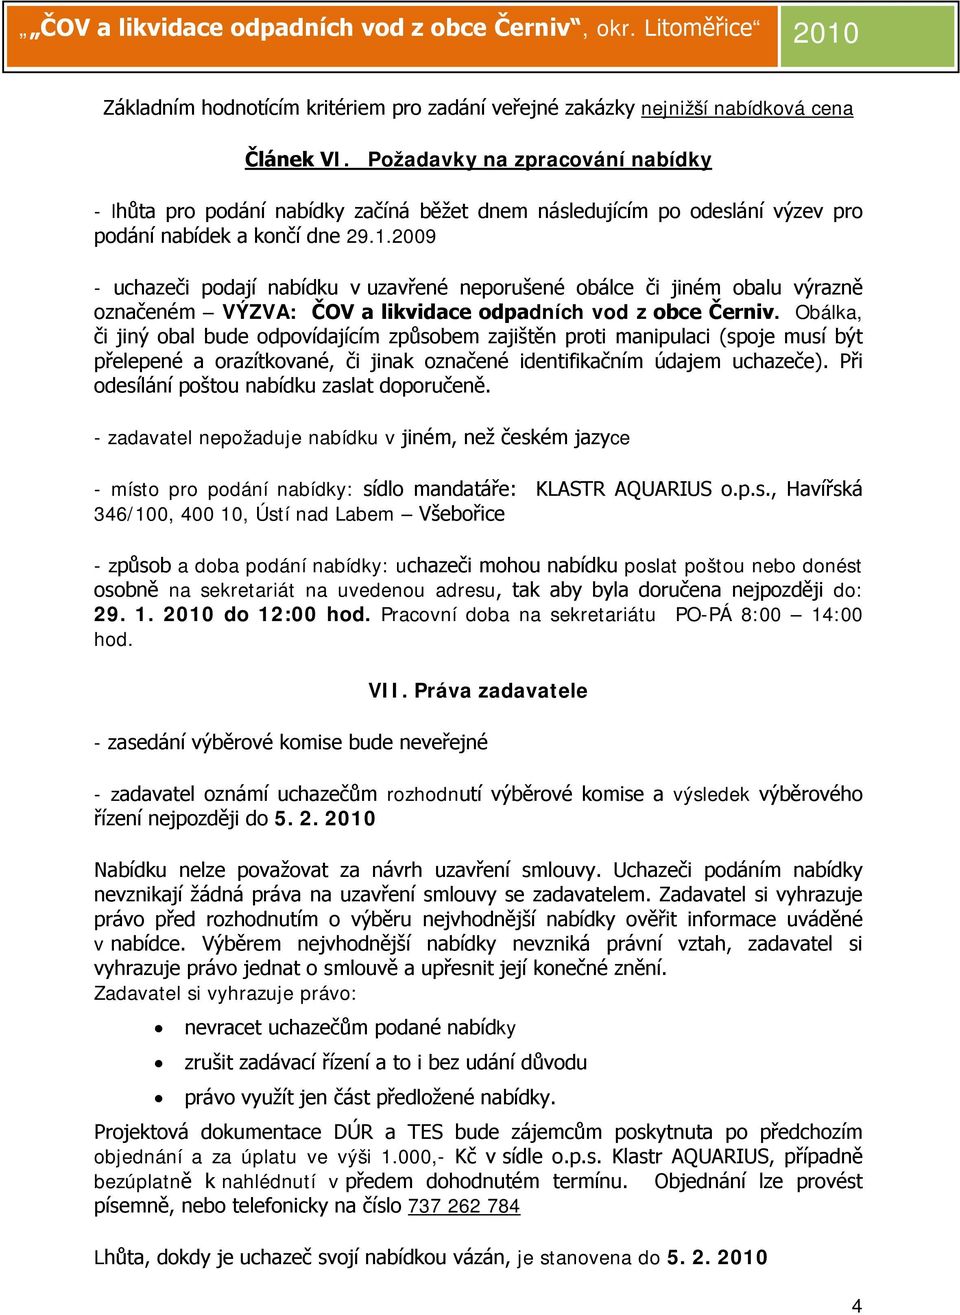 2009 - uchazeči podají nabídku v uzavřené neporušené obálce či jiném obalu výrazně označeném VÝZVA: ČOV a likvidace odpadních vod z obce Černiv.